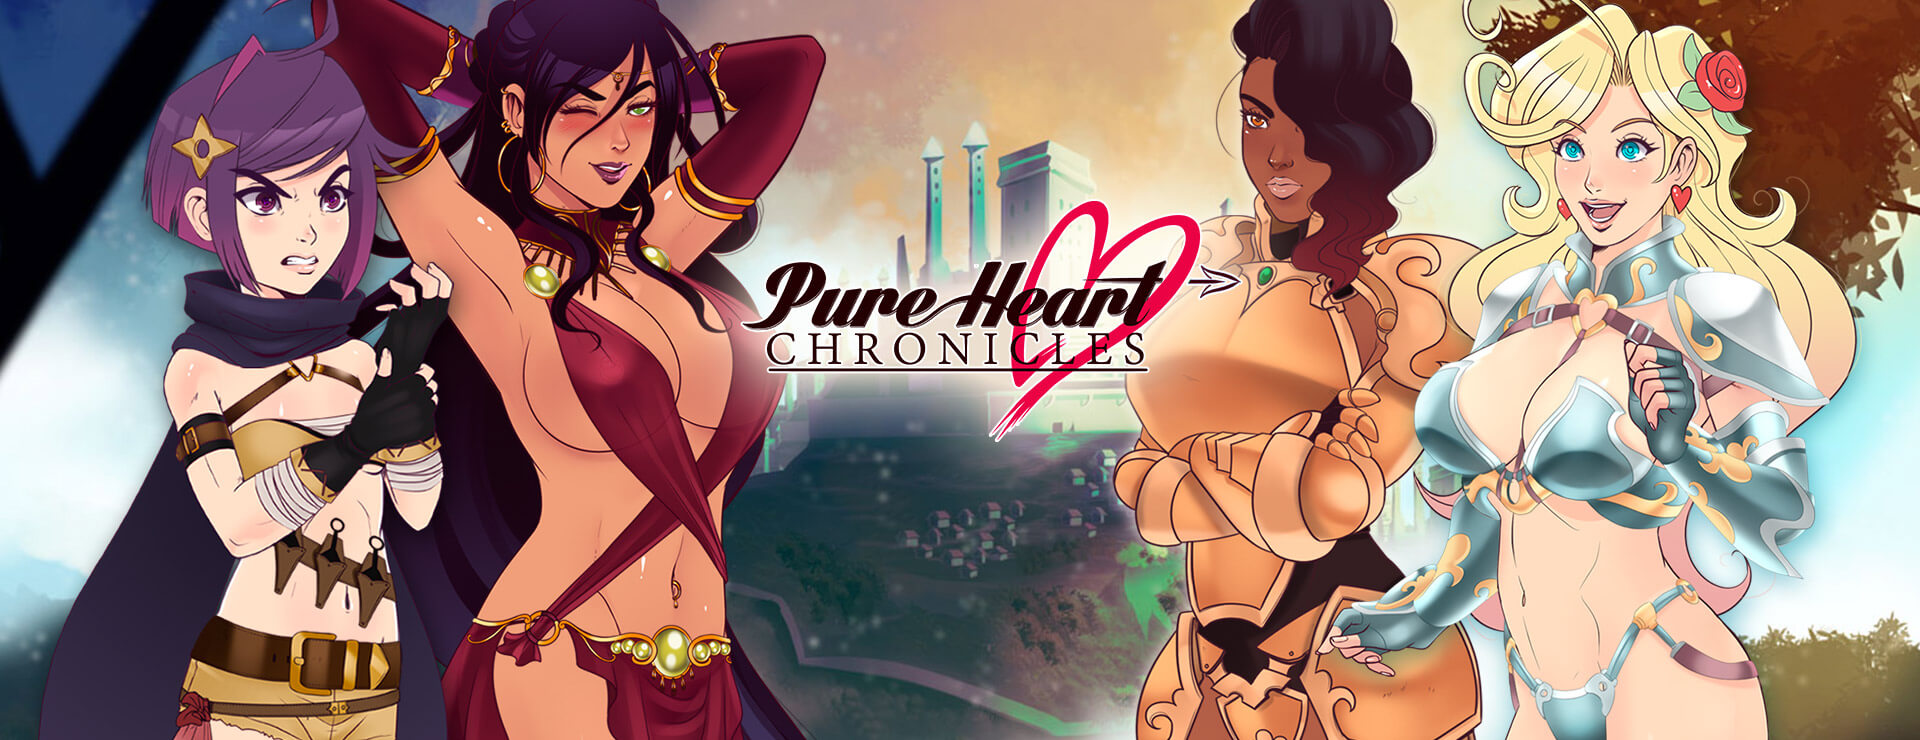 Pure Heart Chronicles - Novela Visual Juego